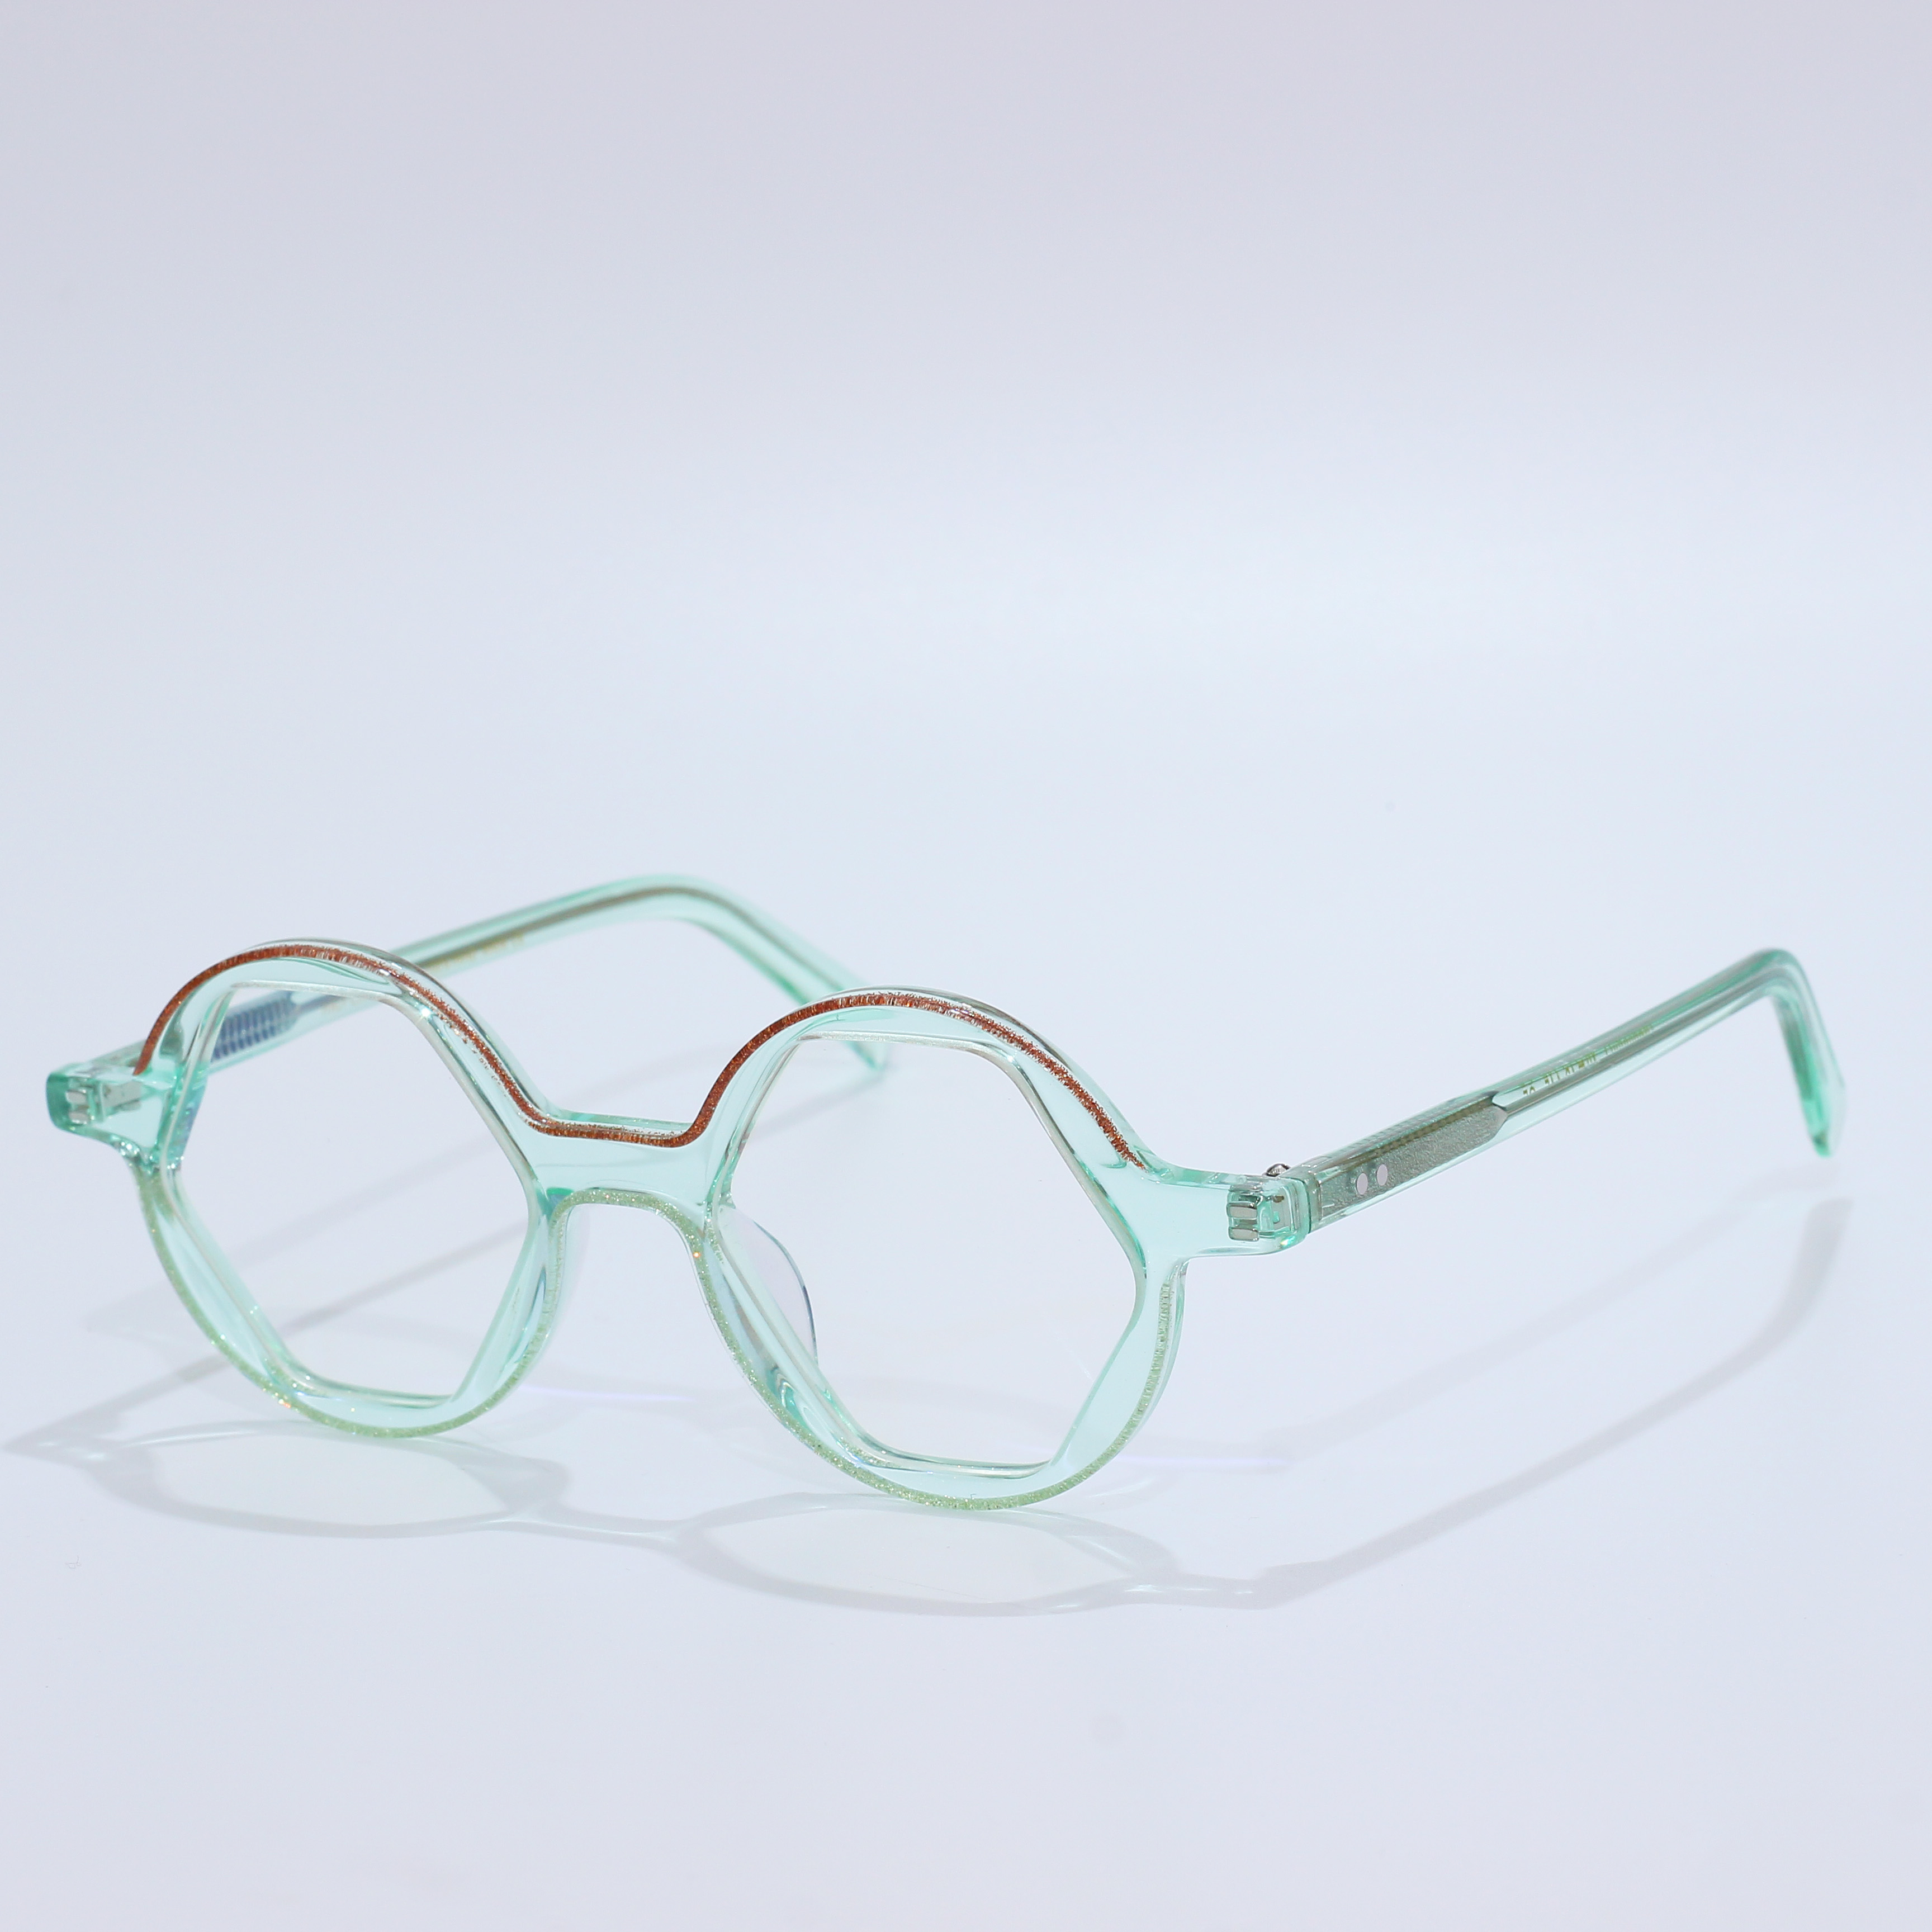 Acetate Mazzucchelli Blue Light Glasses Eyeglasses Frame (7)